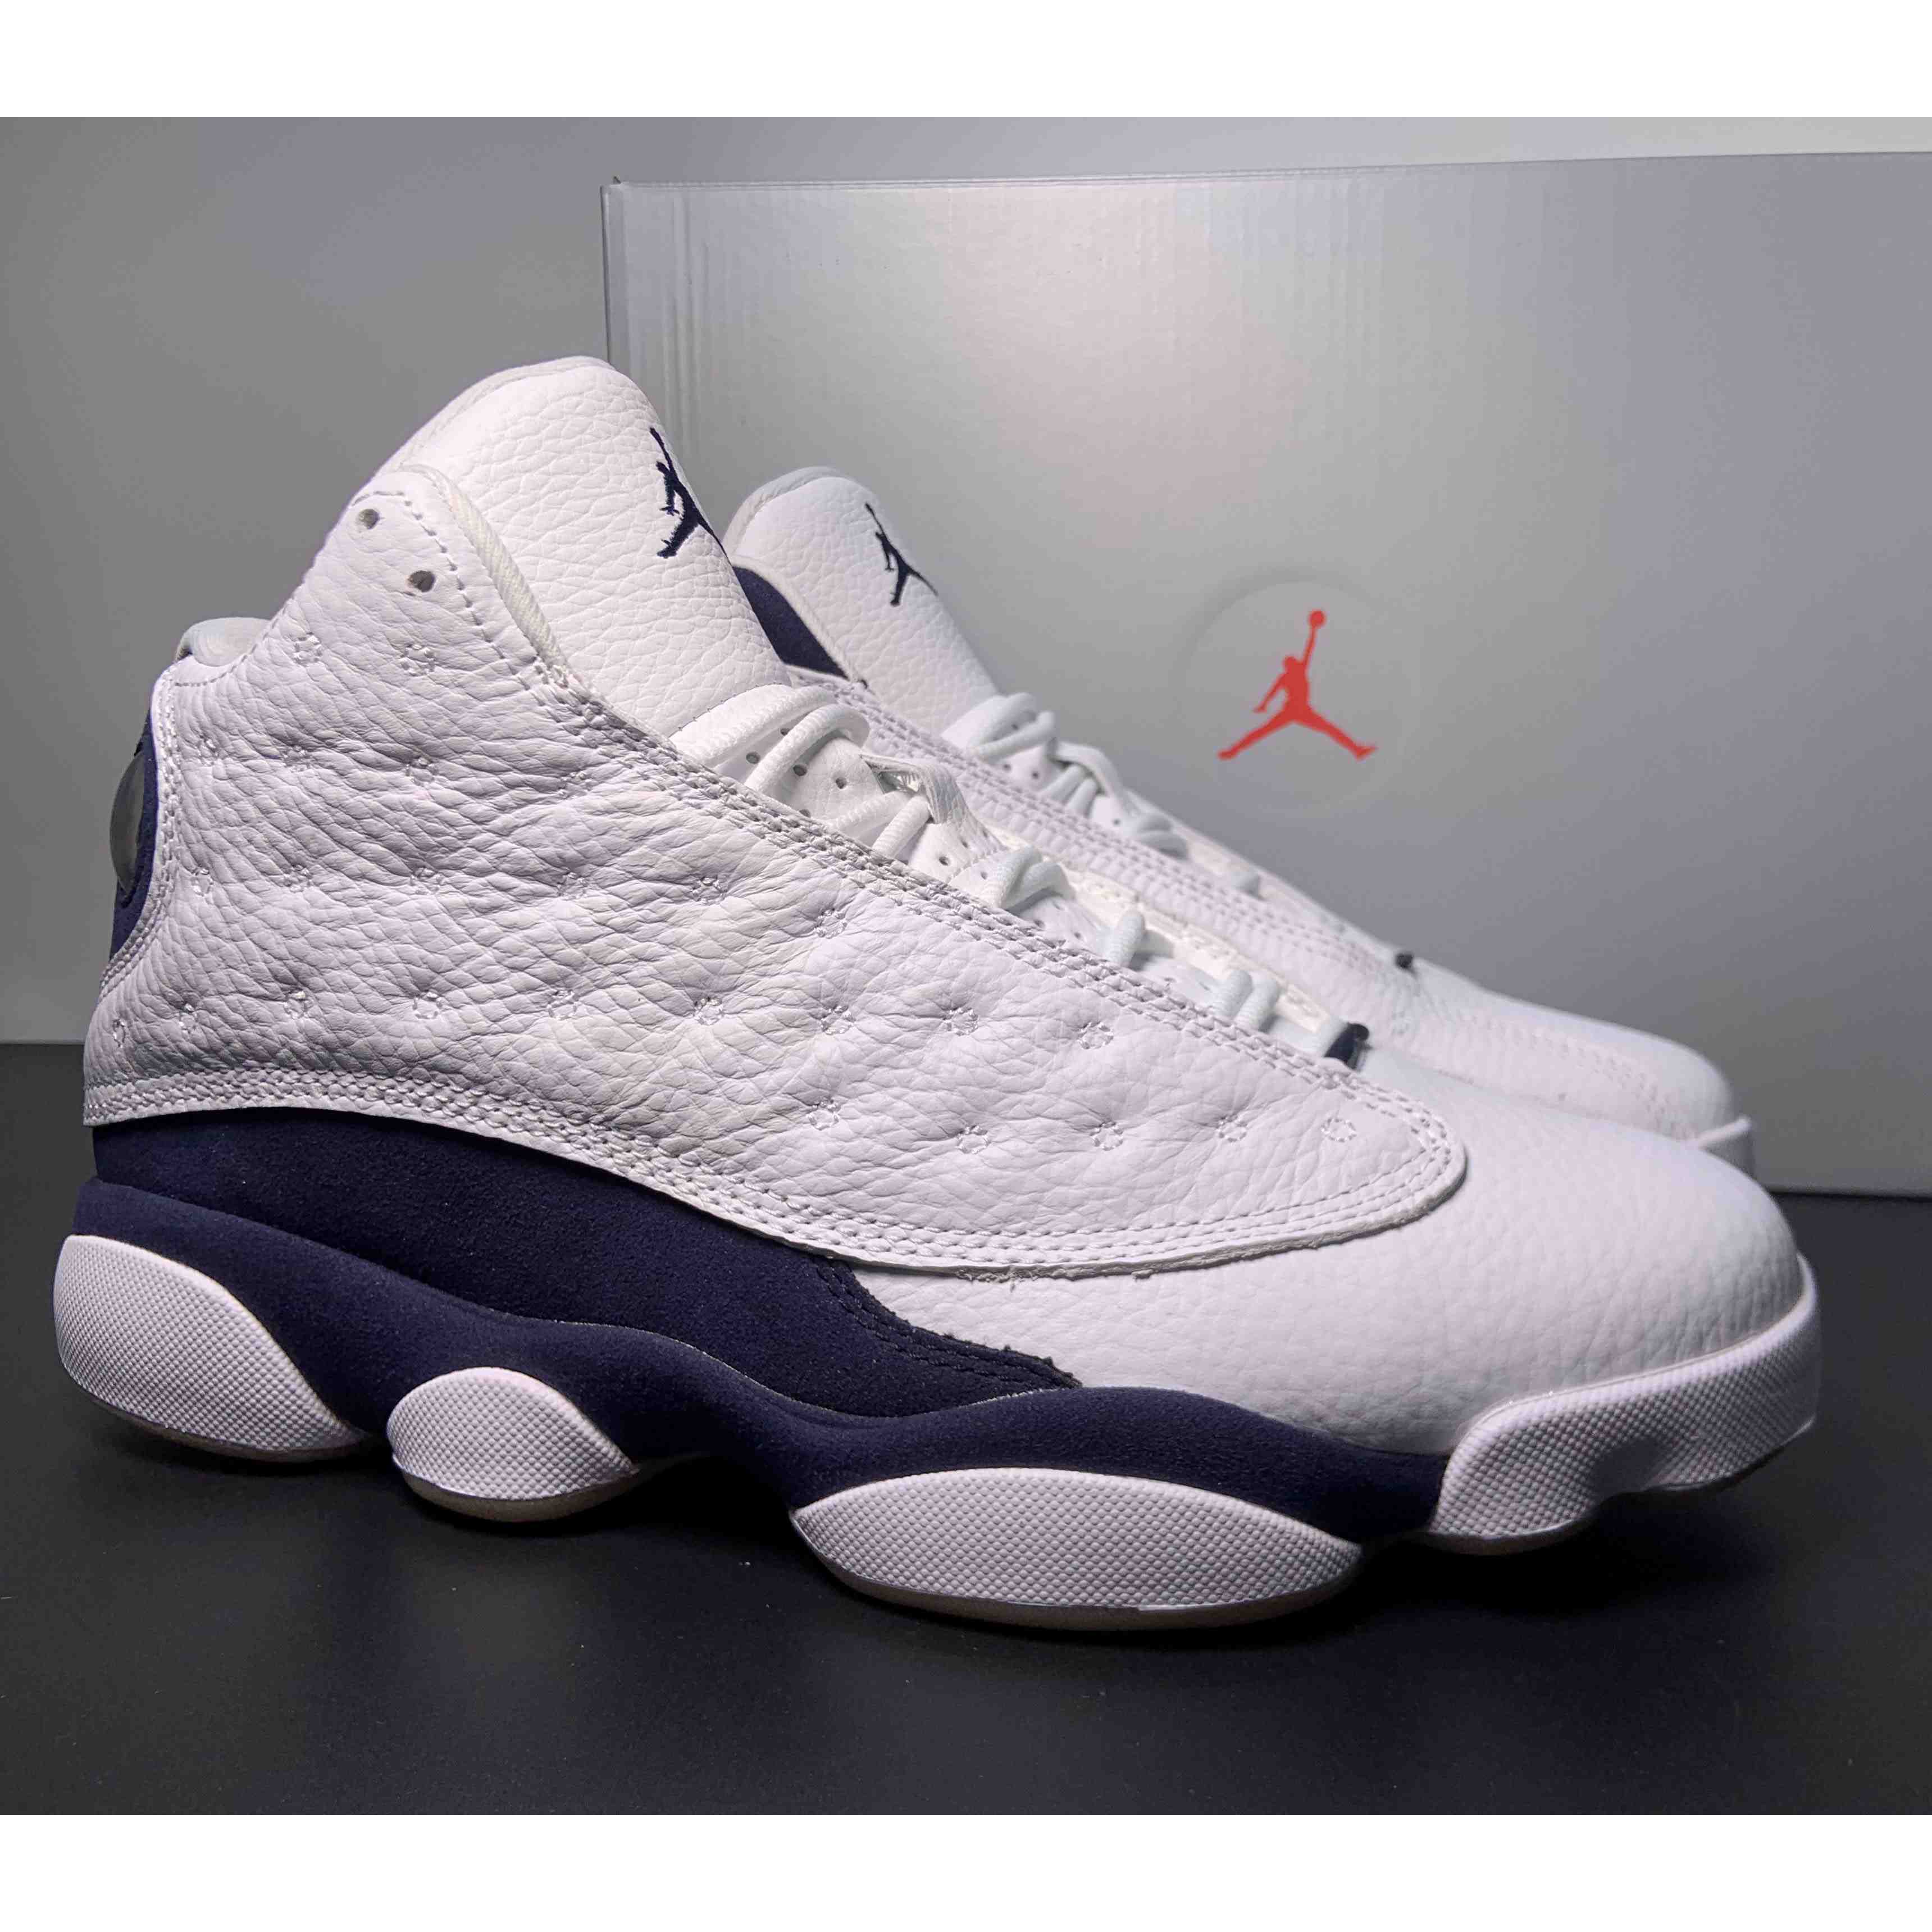 Air Jordan 13 “Midnight Navy Sneakers     414571-140 - DesignerGu